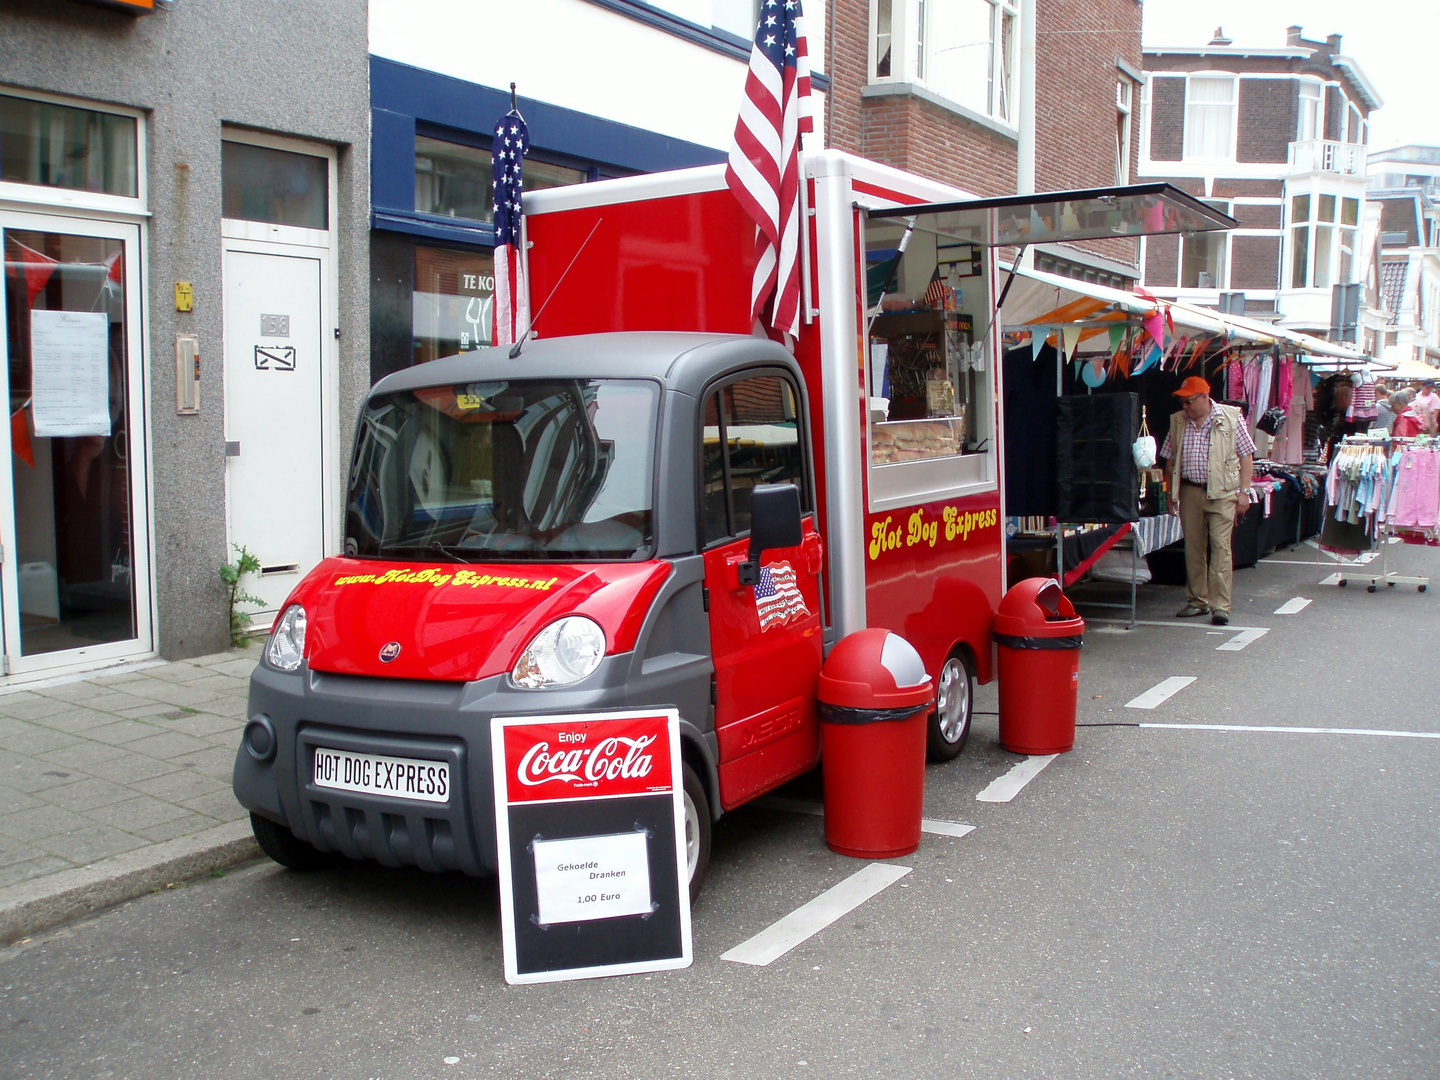 Hot Dog Express in Scheveningen